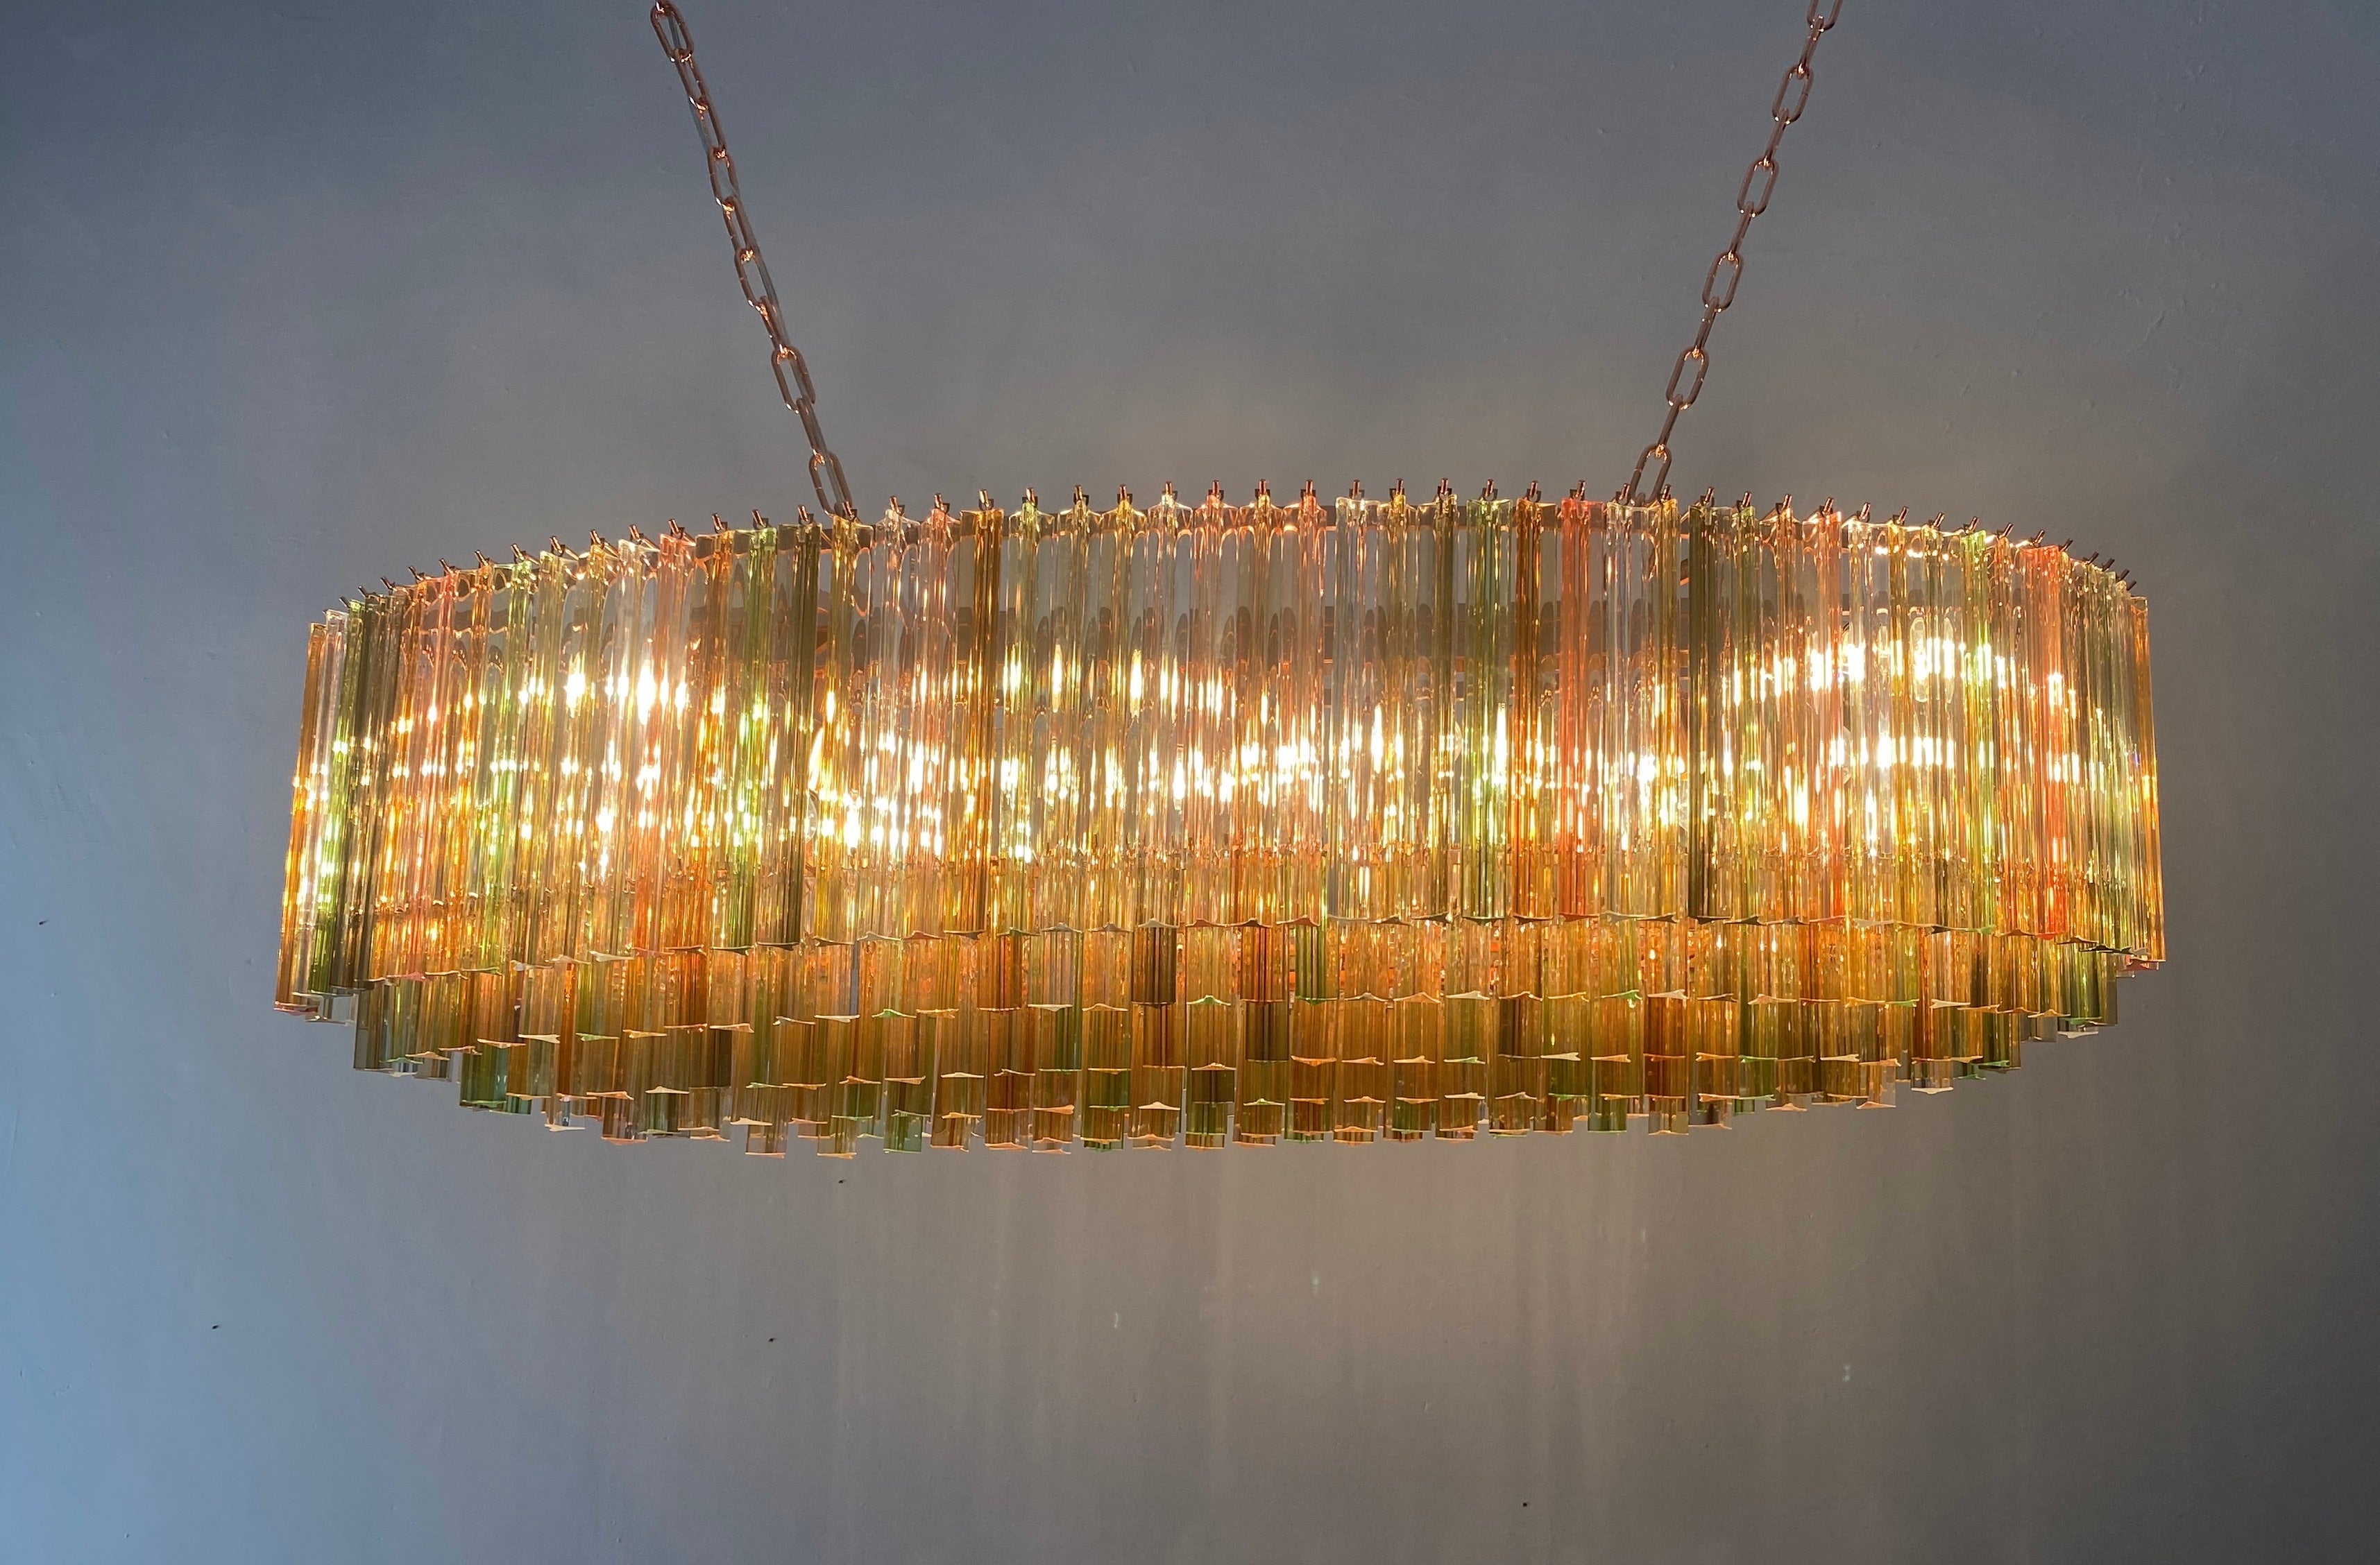 Magnifique lustre de Murano fait de prisme triedi multicolore en cristal de Murano sur six niveaux avec une armature en métal de couleur cuivre.
Les verres sont ambrés, transparents, fumés, ambrés, dorés,  rose, transparent  et vert, créant un